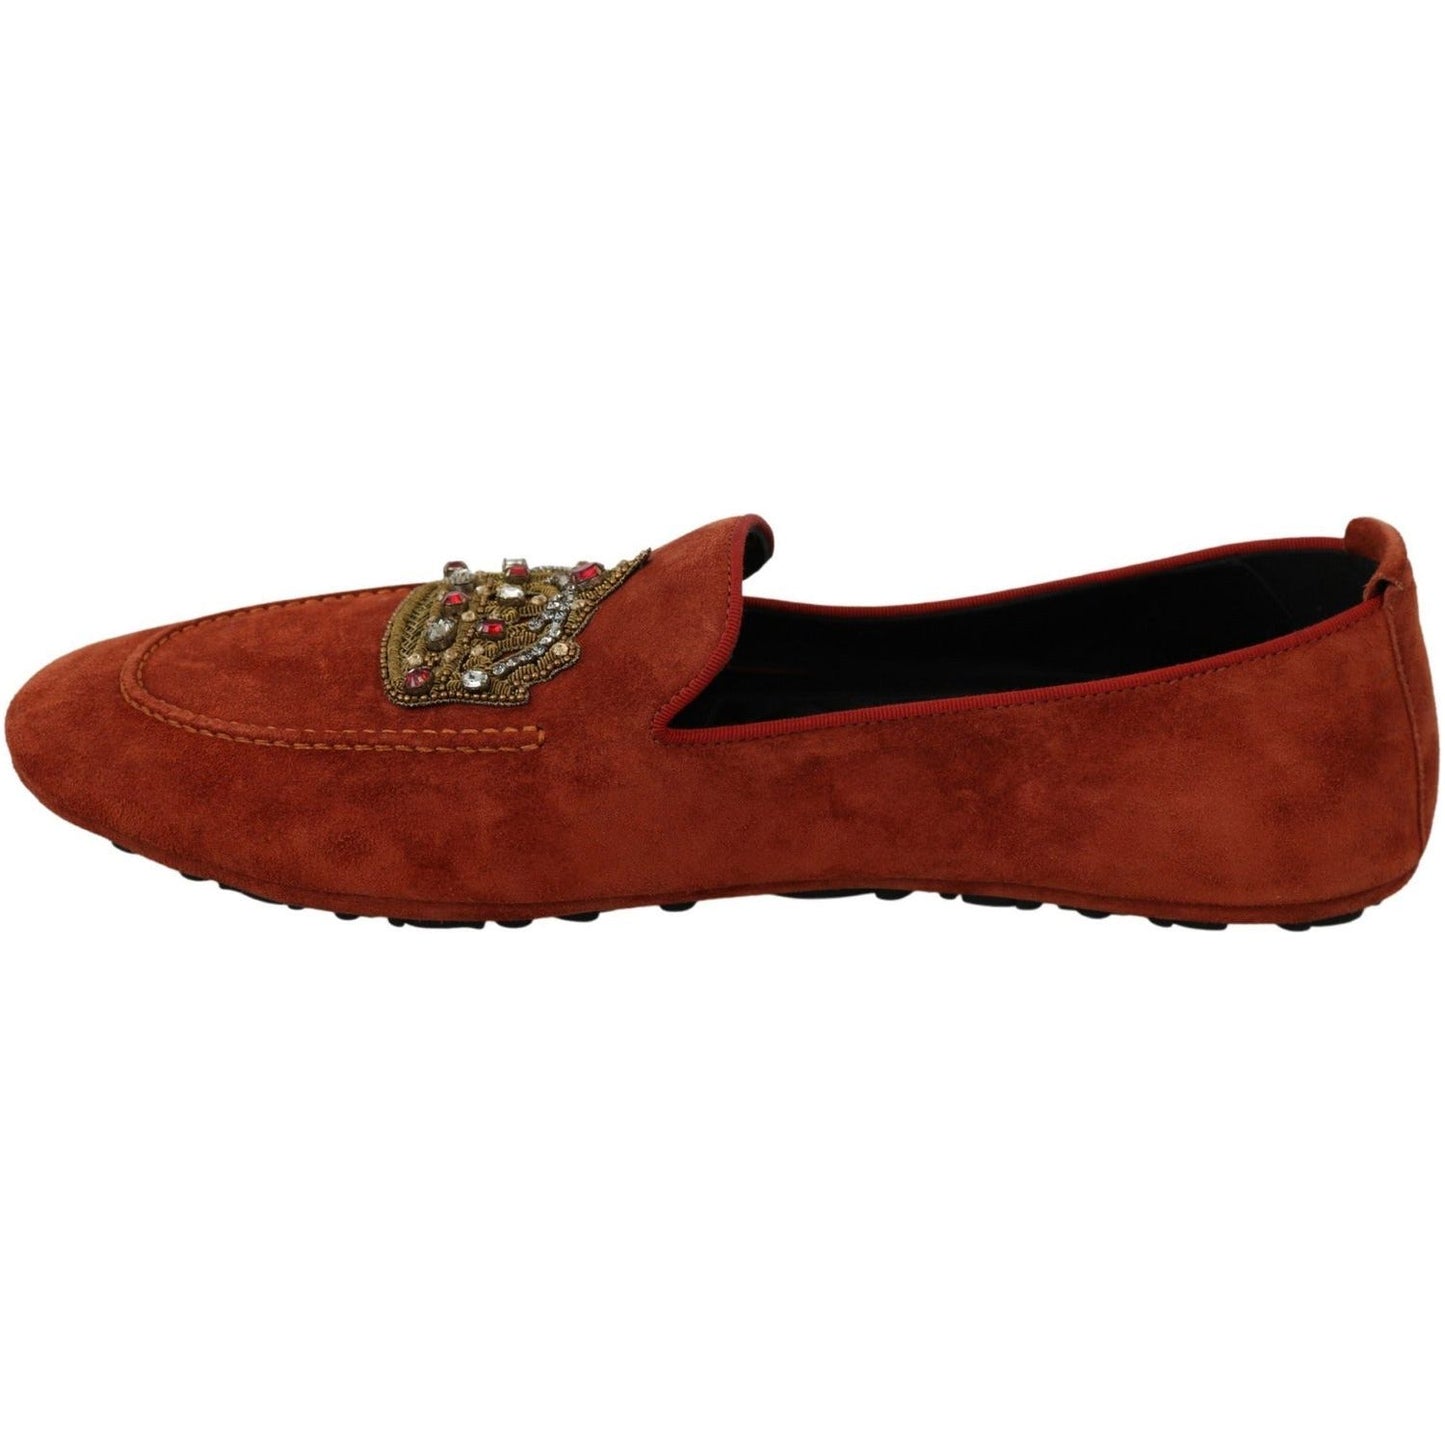 Dolce & Gabbana Elegant Orange Leather Moccasin Slippers orange-leather-moccasins-crystal-crown-slippers-shoes IMG_7331-scaled-4d862bcc-6ed.jpg